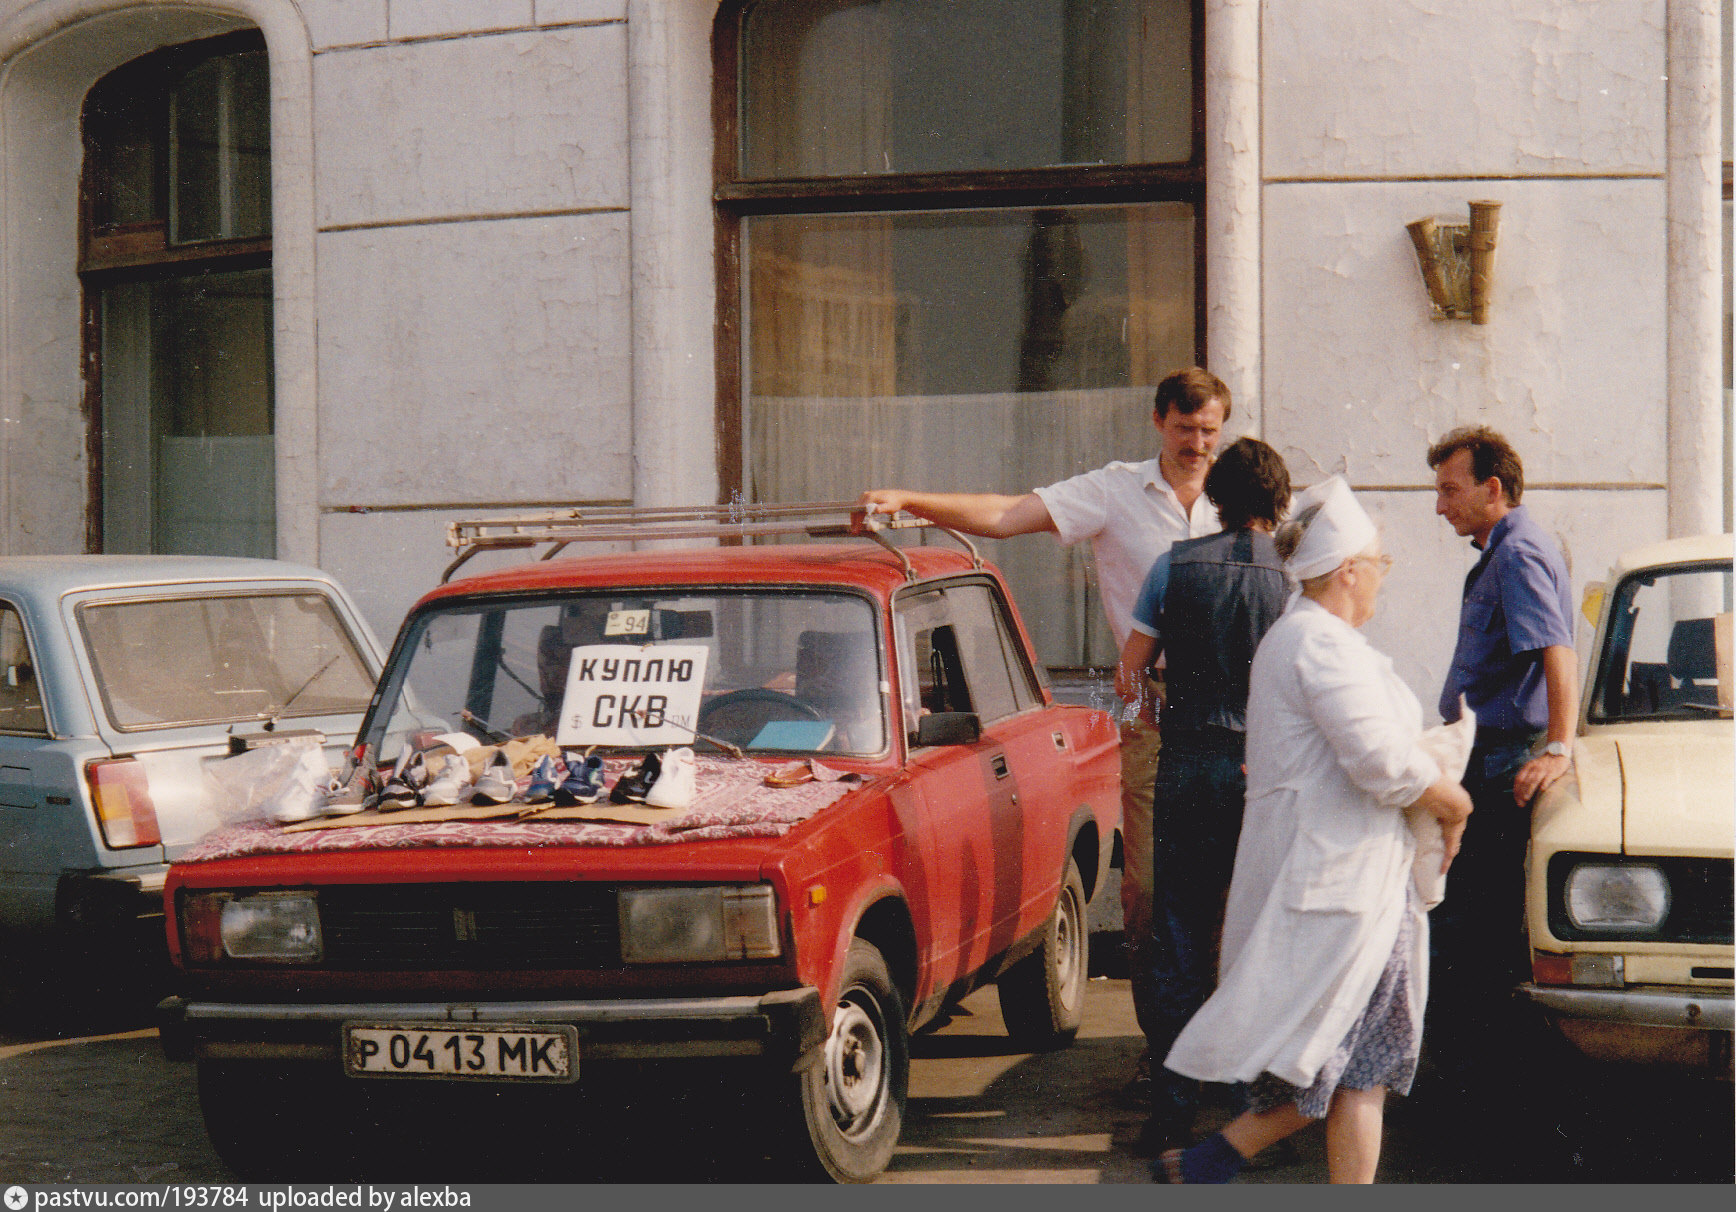 Обмен бывших девушек. Лихие 1990-е Москва. Уличная торговля в Москве 90-е. Москва 1992 год. 90е в России.